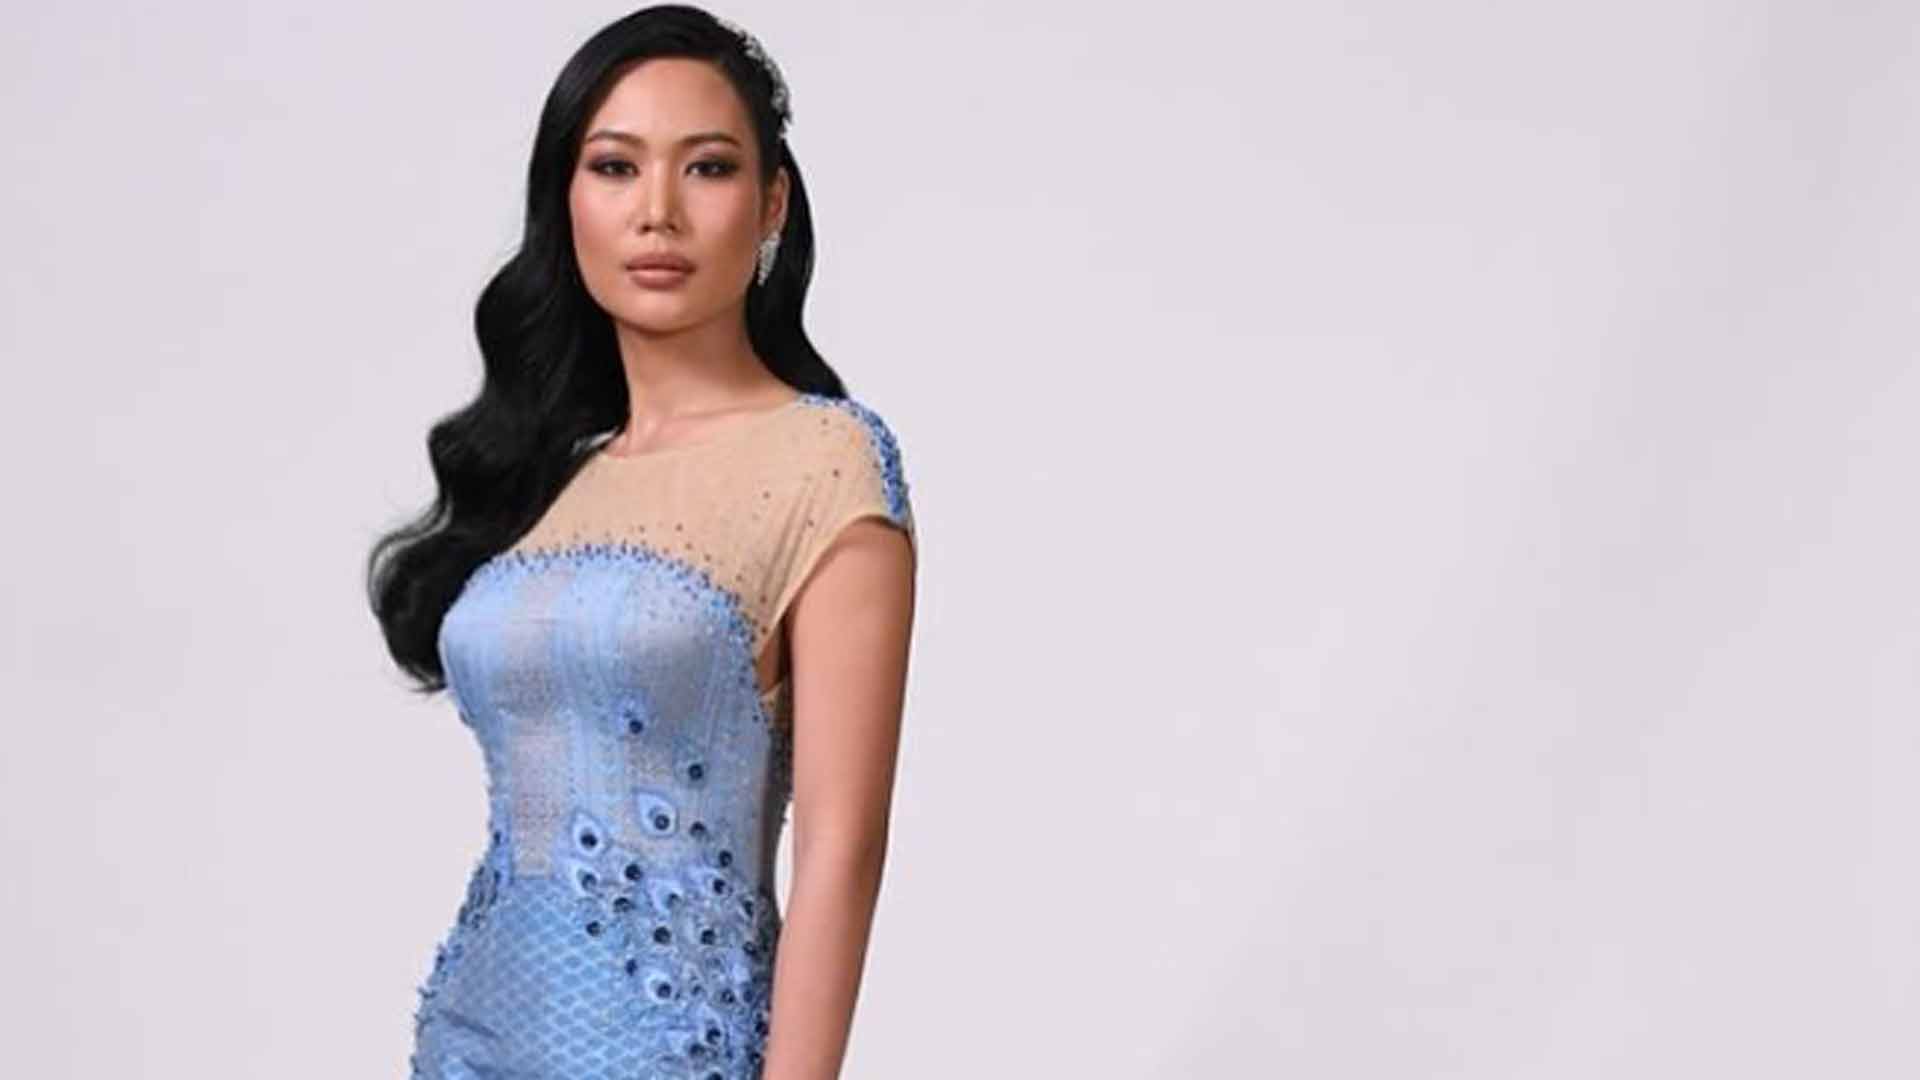 Una ‘youtuber’ se enfrenta a cargos por criticar el vestido de la candidata de Tailandia en el Miss Universo